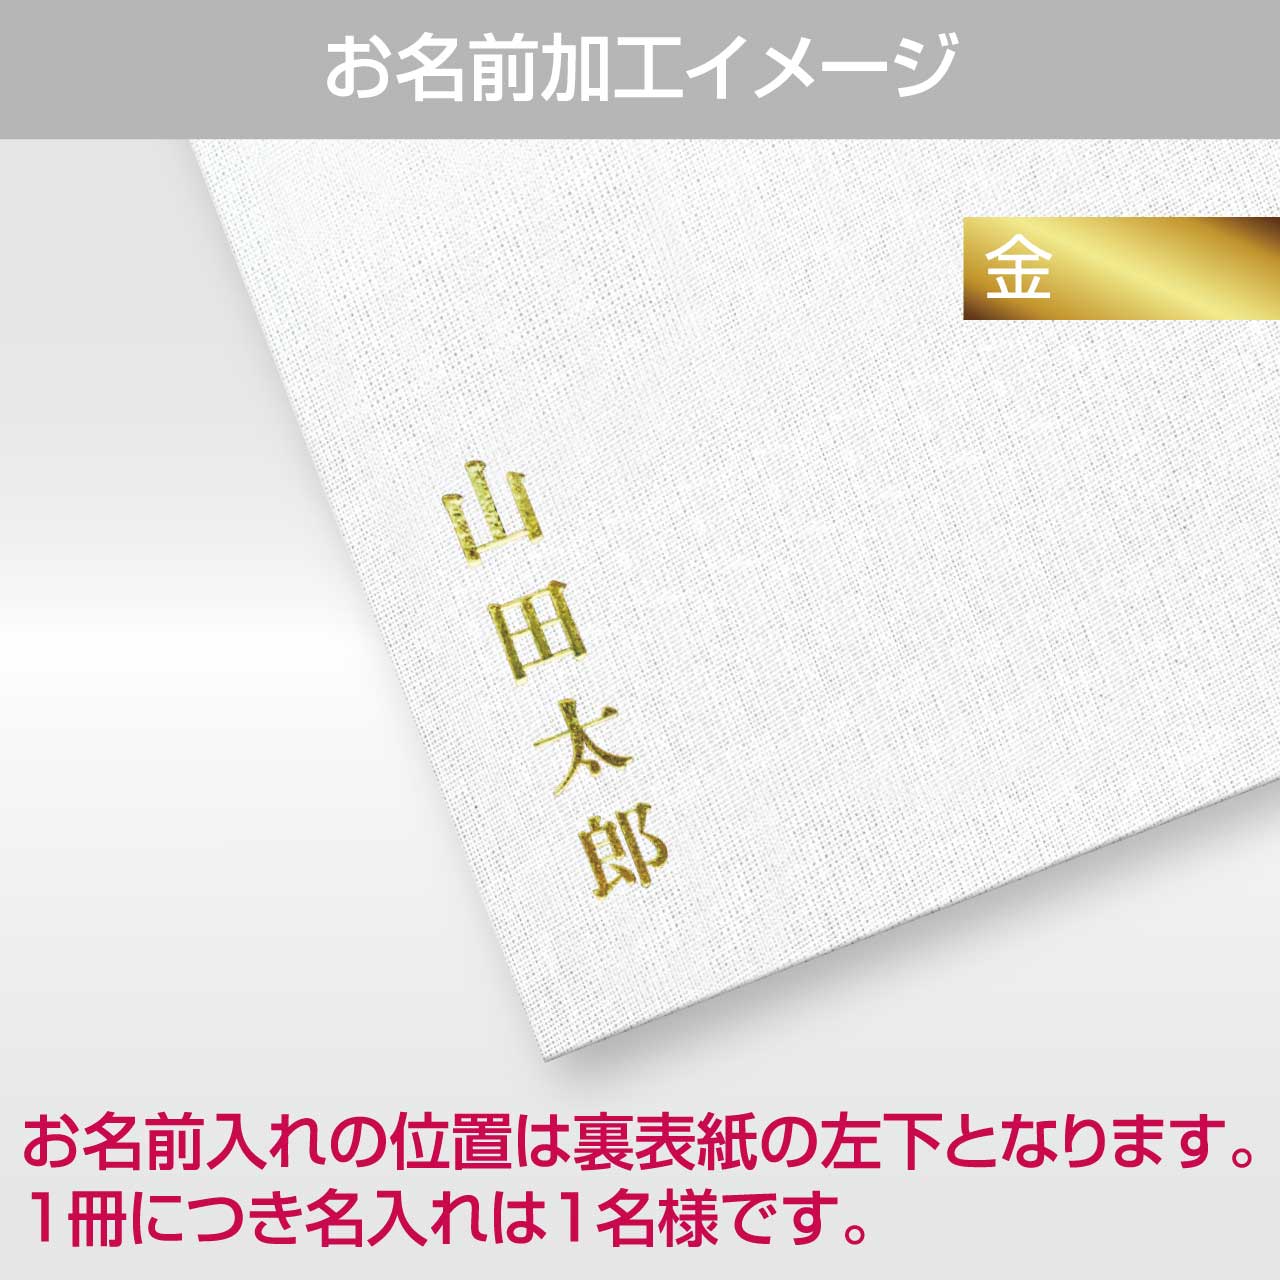 Goshuin book “Kiyora” Aoten Sunflower